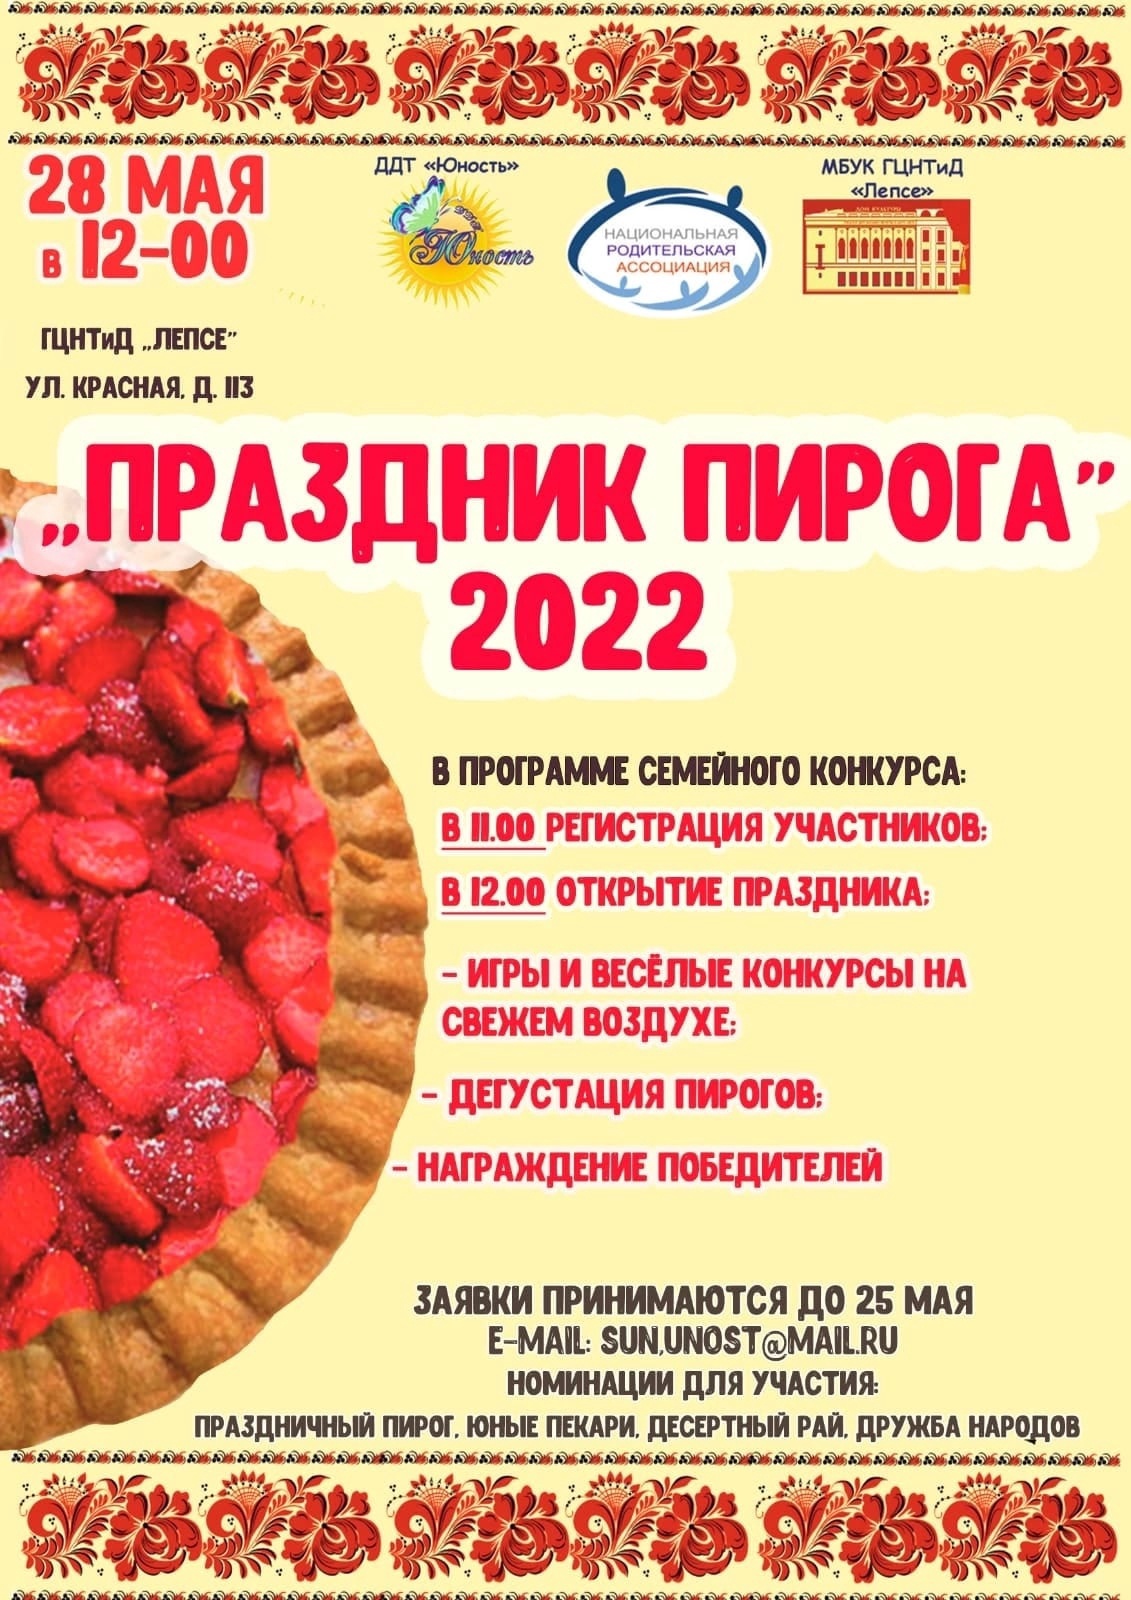 Праздник пирога в Солнечногорске